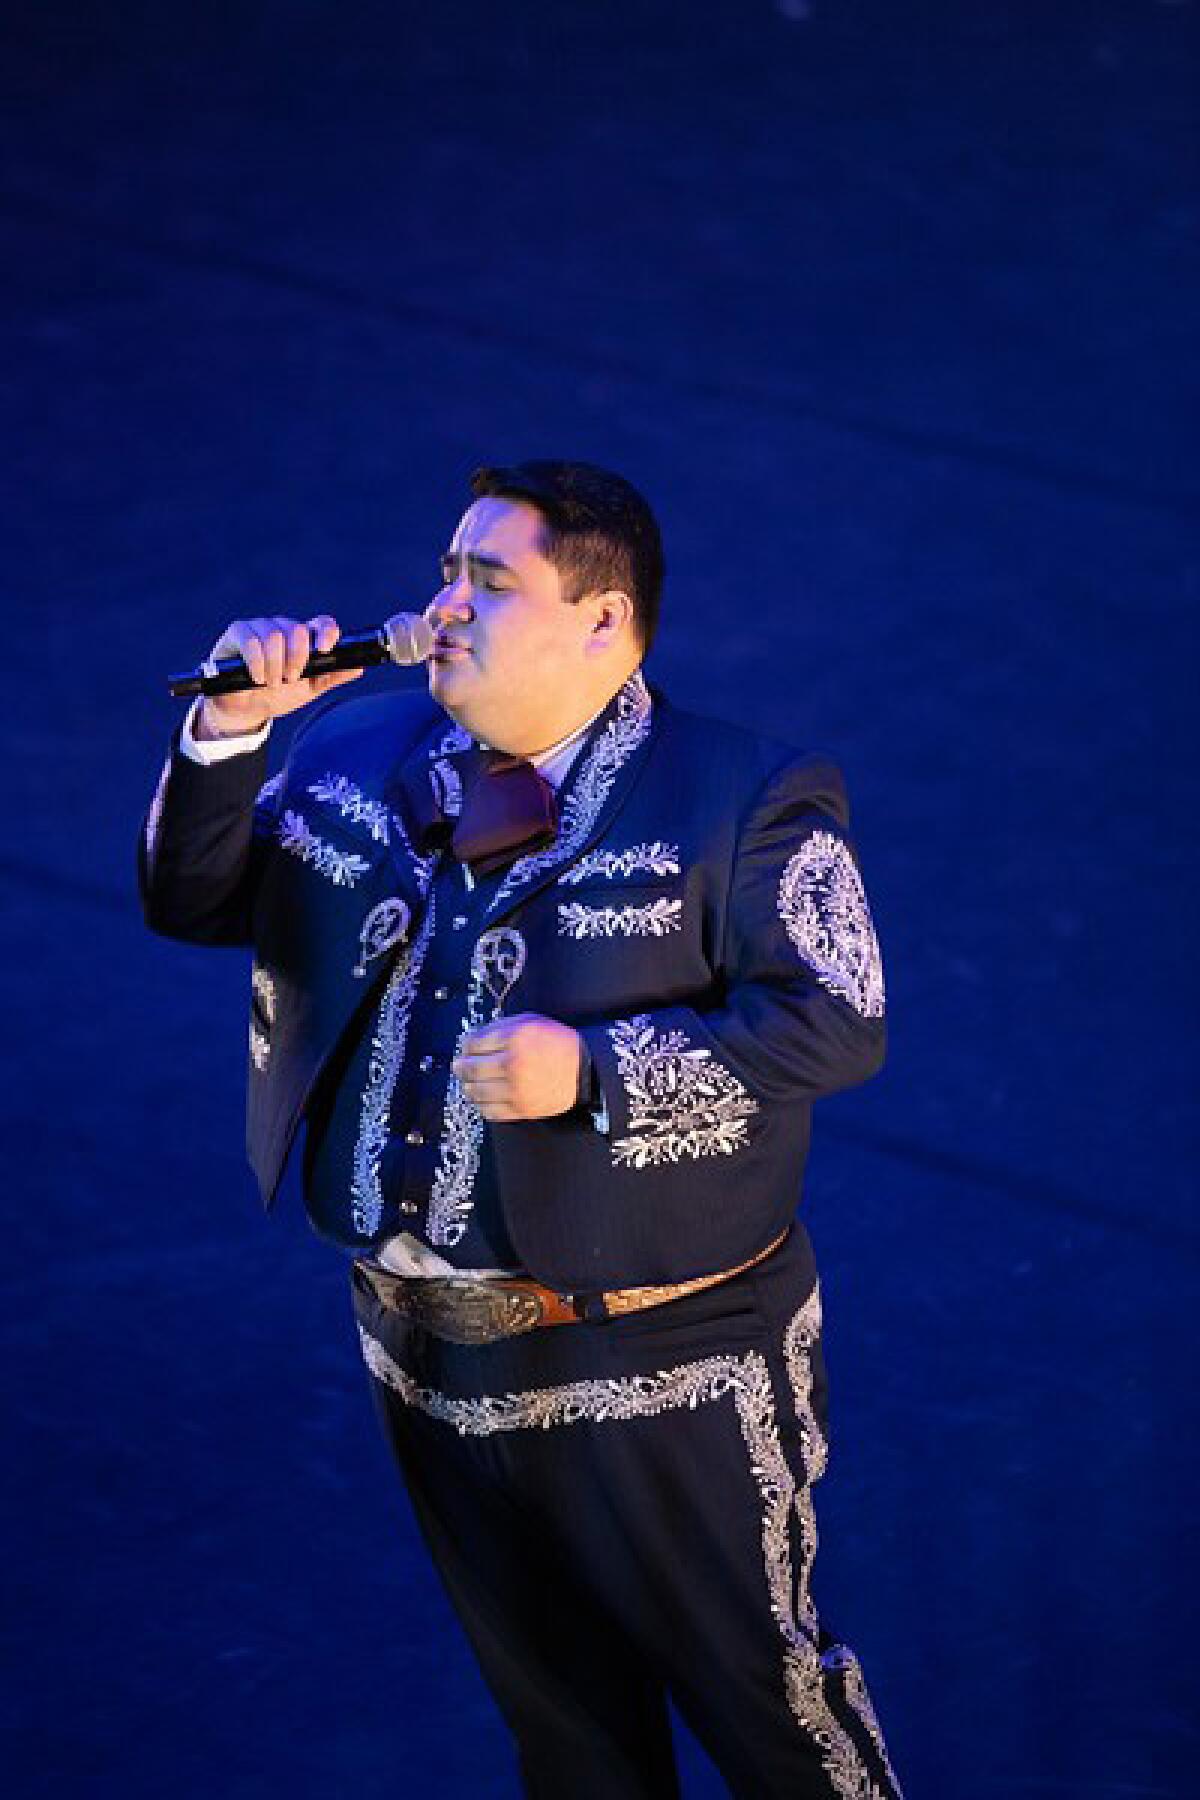 A soloist from Mariachi Garibaldi de Jaime Cuellar performs a song during the Nochebuena: 